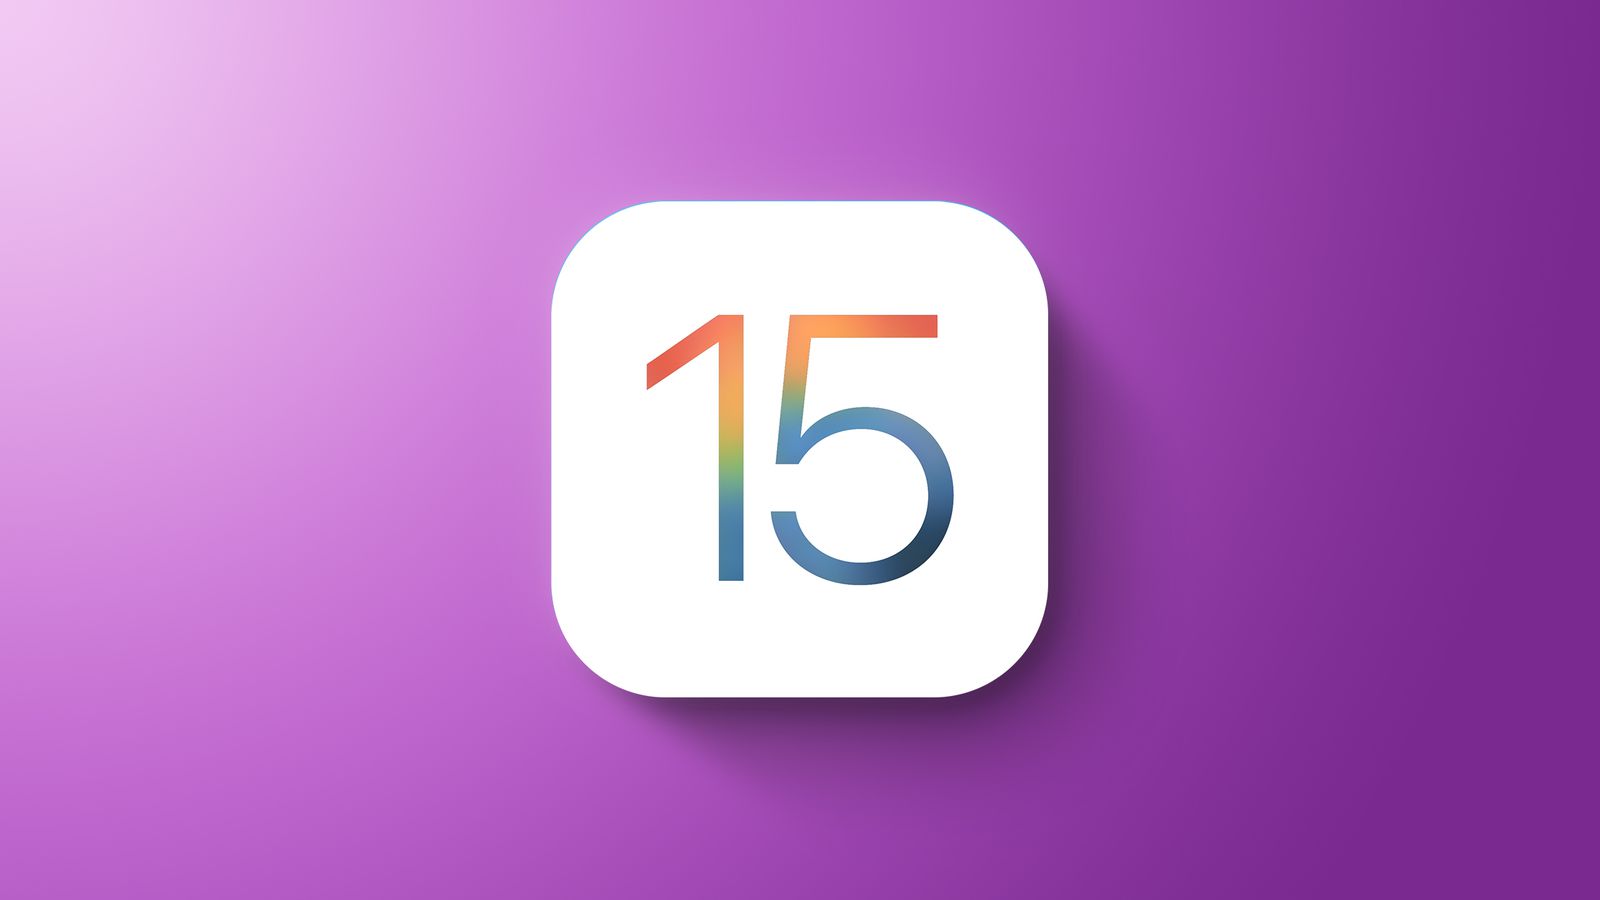 iOS15